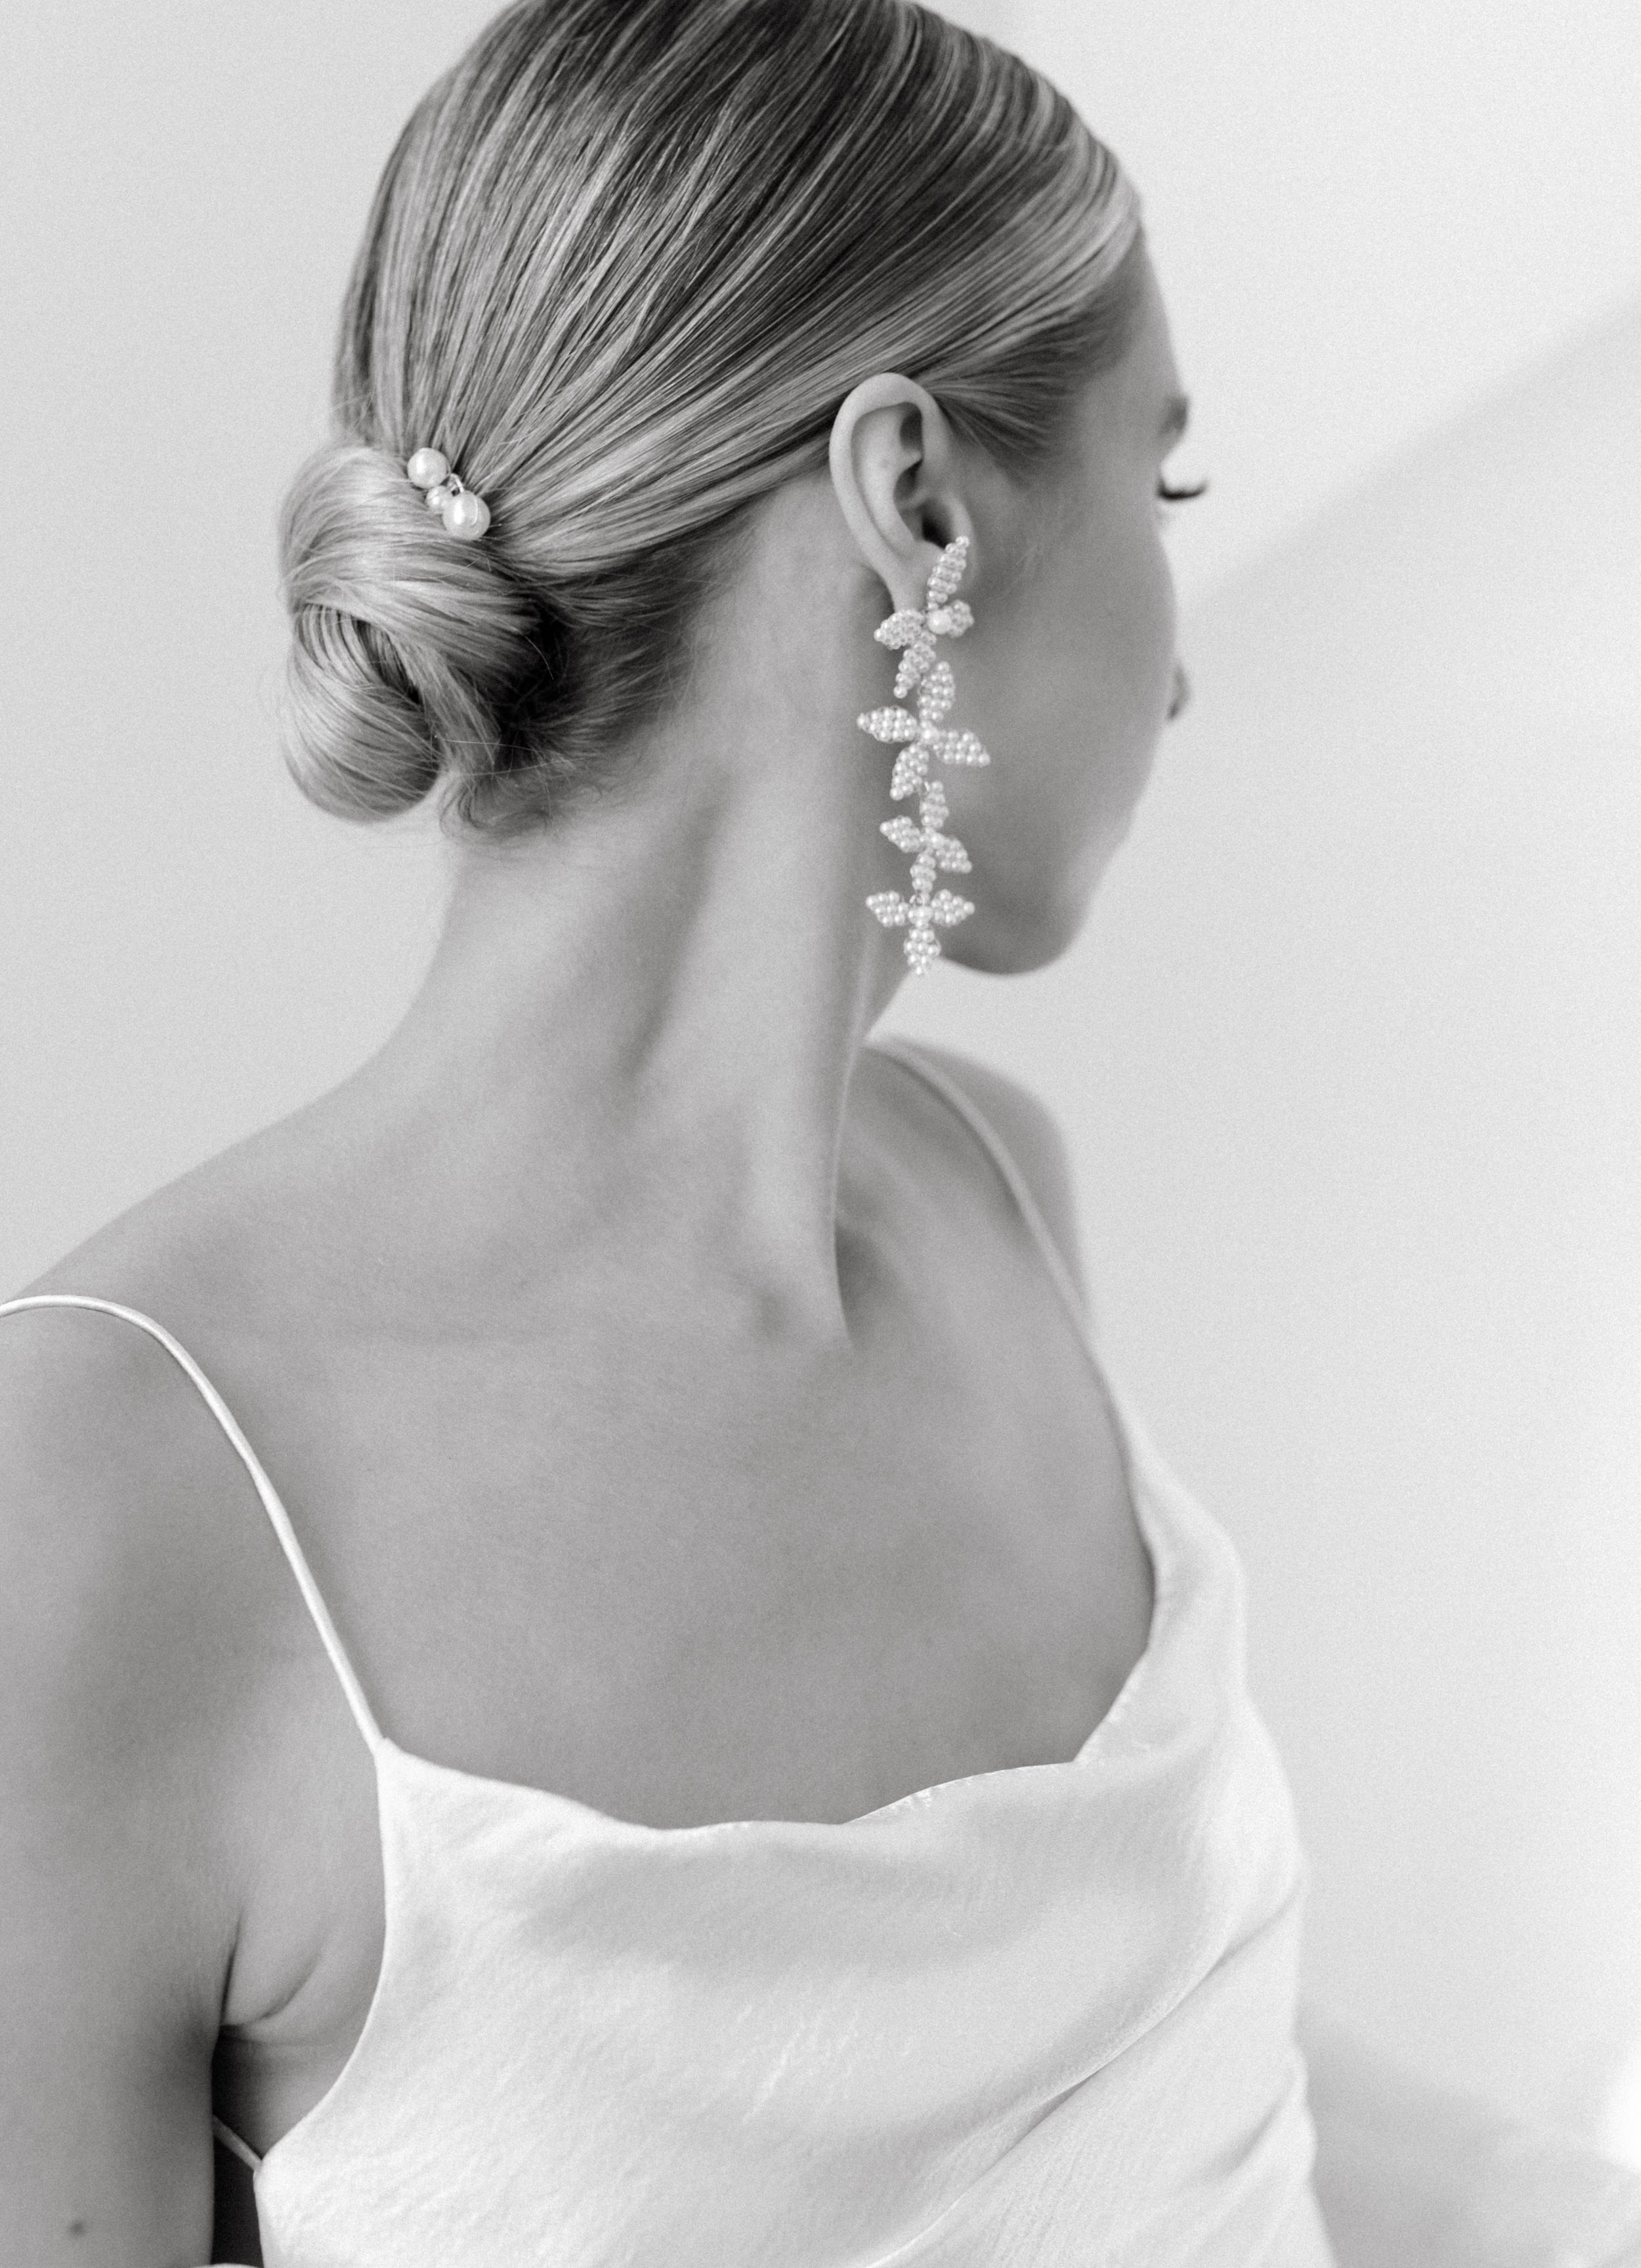 harlow-pearl-earrings-by-abellie-bridal-accessories-realwedding-chadand-andie-04.jpg